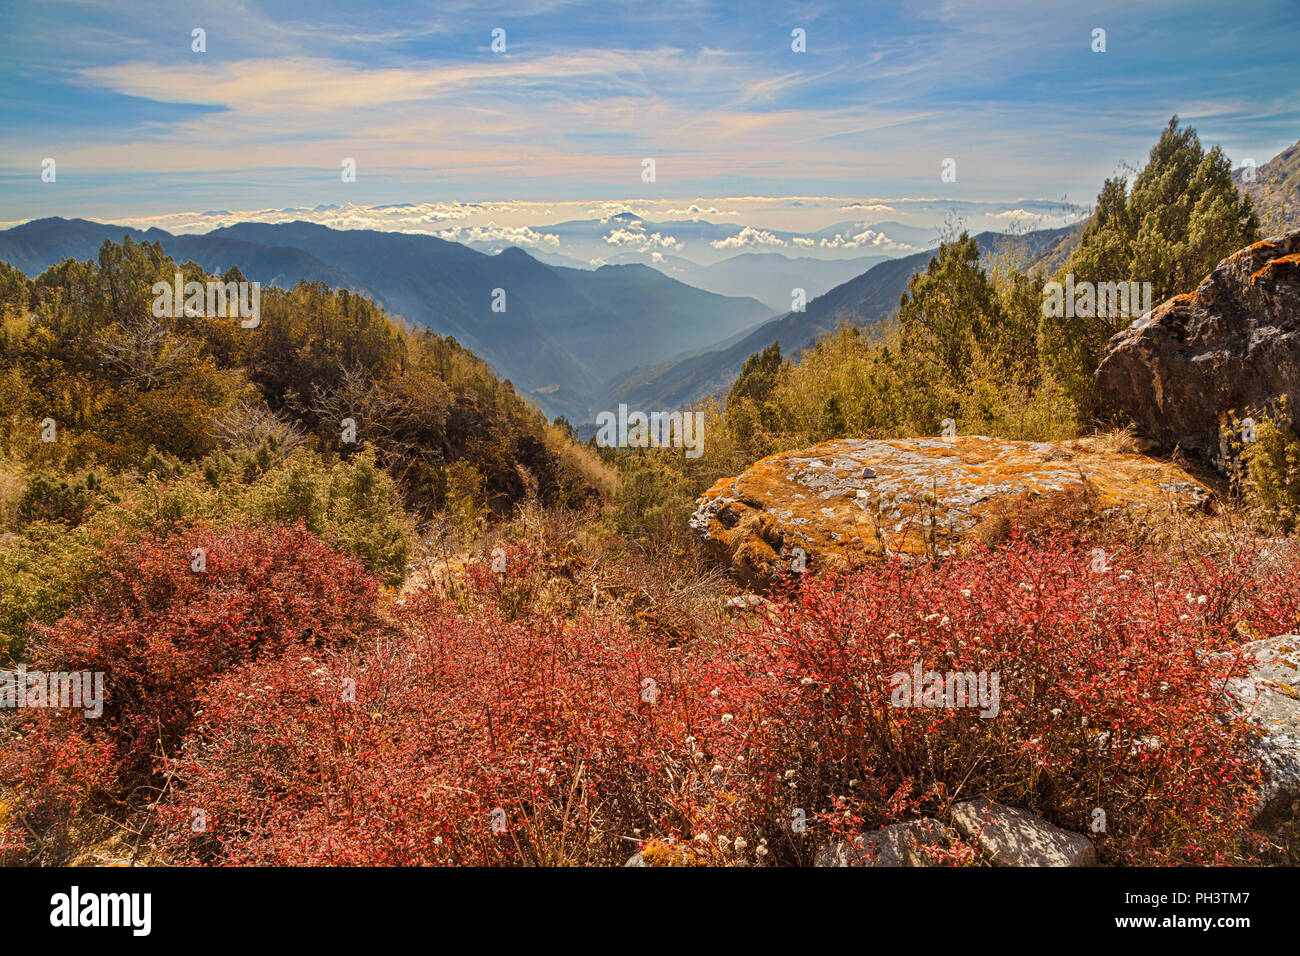 Gran paisaje de las montañas del Himalaya con vegetación roja y rocas en primer plano y amplia vista a las montañas en el fondo. El Himalaya, Nepal Foto de stock